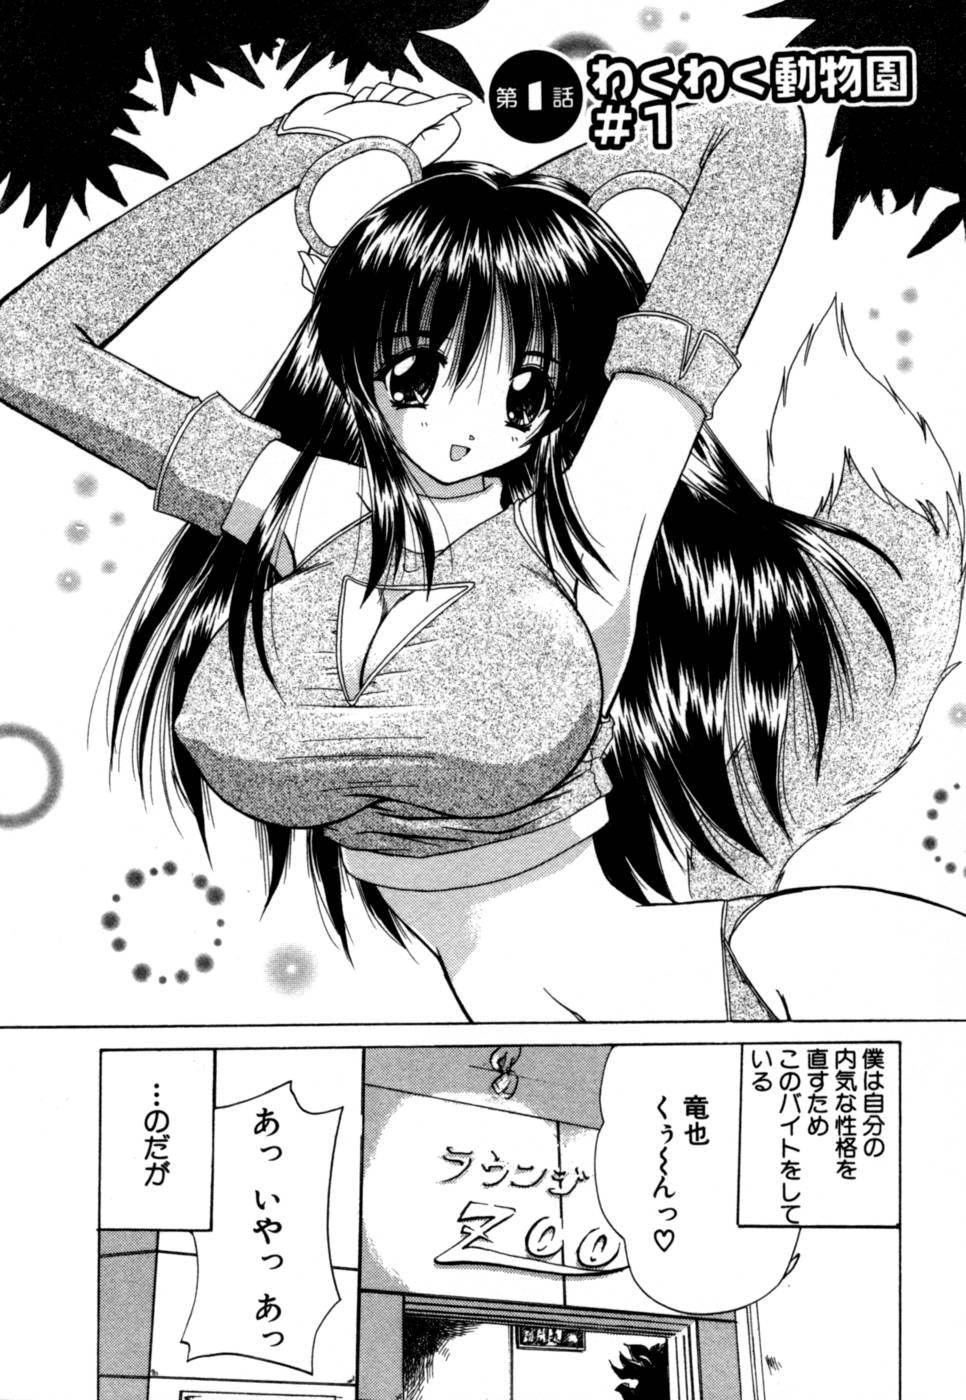 Chunky MomoTama! - Momoiro Tamasudare! Amature Porn - Page 8